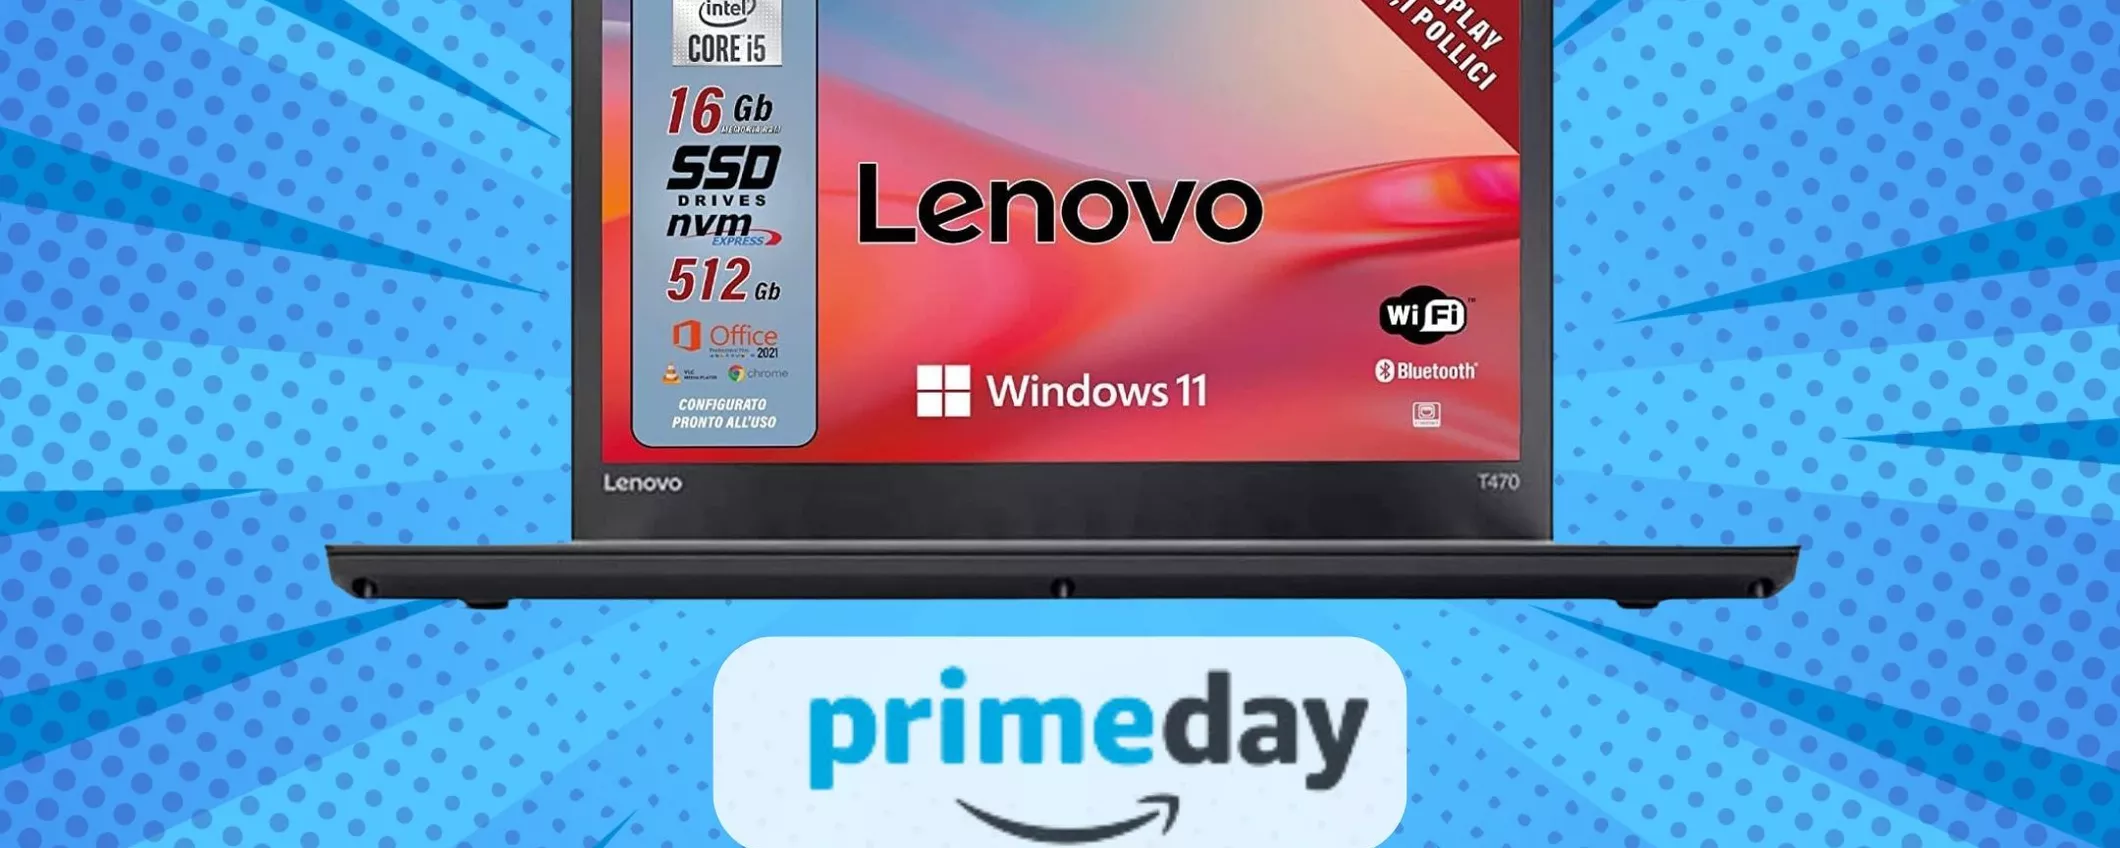 SCONTO PAZZO: Lenovo Notebook i5 -62% per il Prime Day Amazon